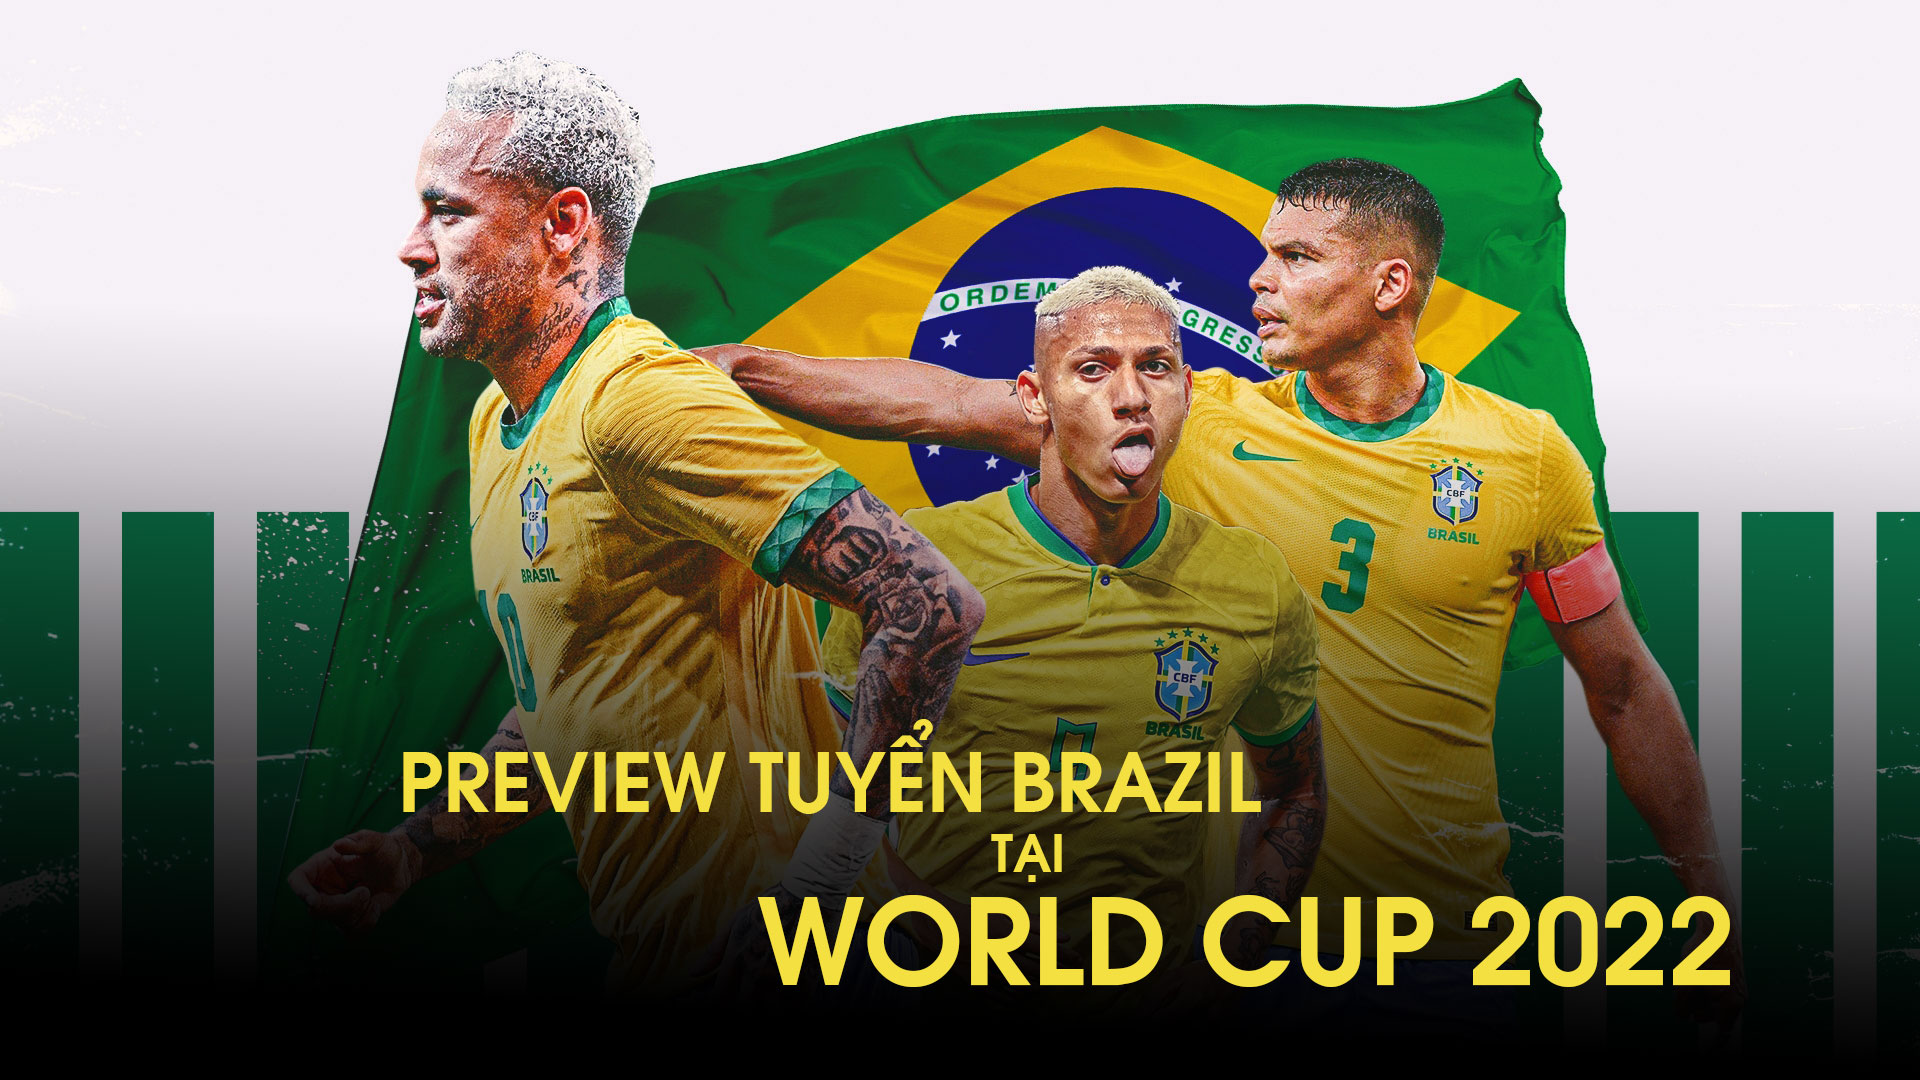 Brazil tại World Cup 2022 - một thách thức lớn cho Đội tuyển Brazil khi phải đối đầu với những đối thủ khó chịu. Hãy cùng xem những hình ảnh về sự chuẩn bị và nỗ lực của đội bóng áo xanh để hiểu rõ hơn về sức mạnh của họ.